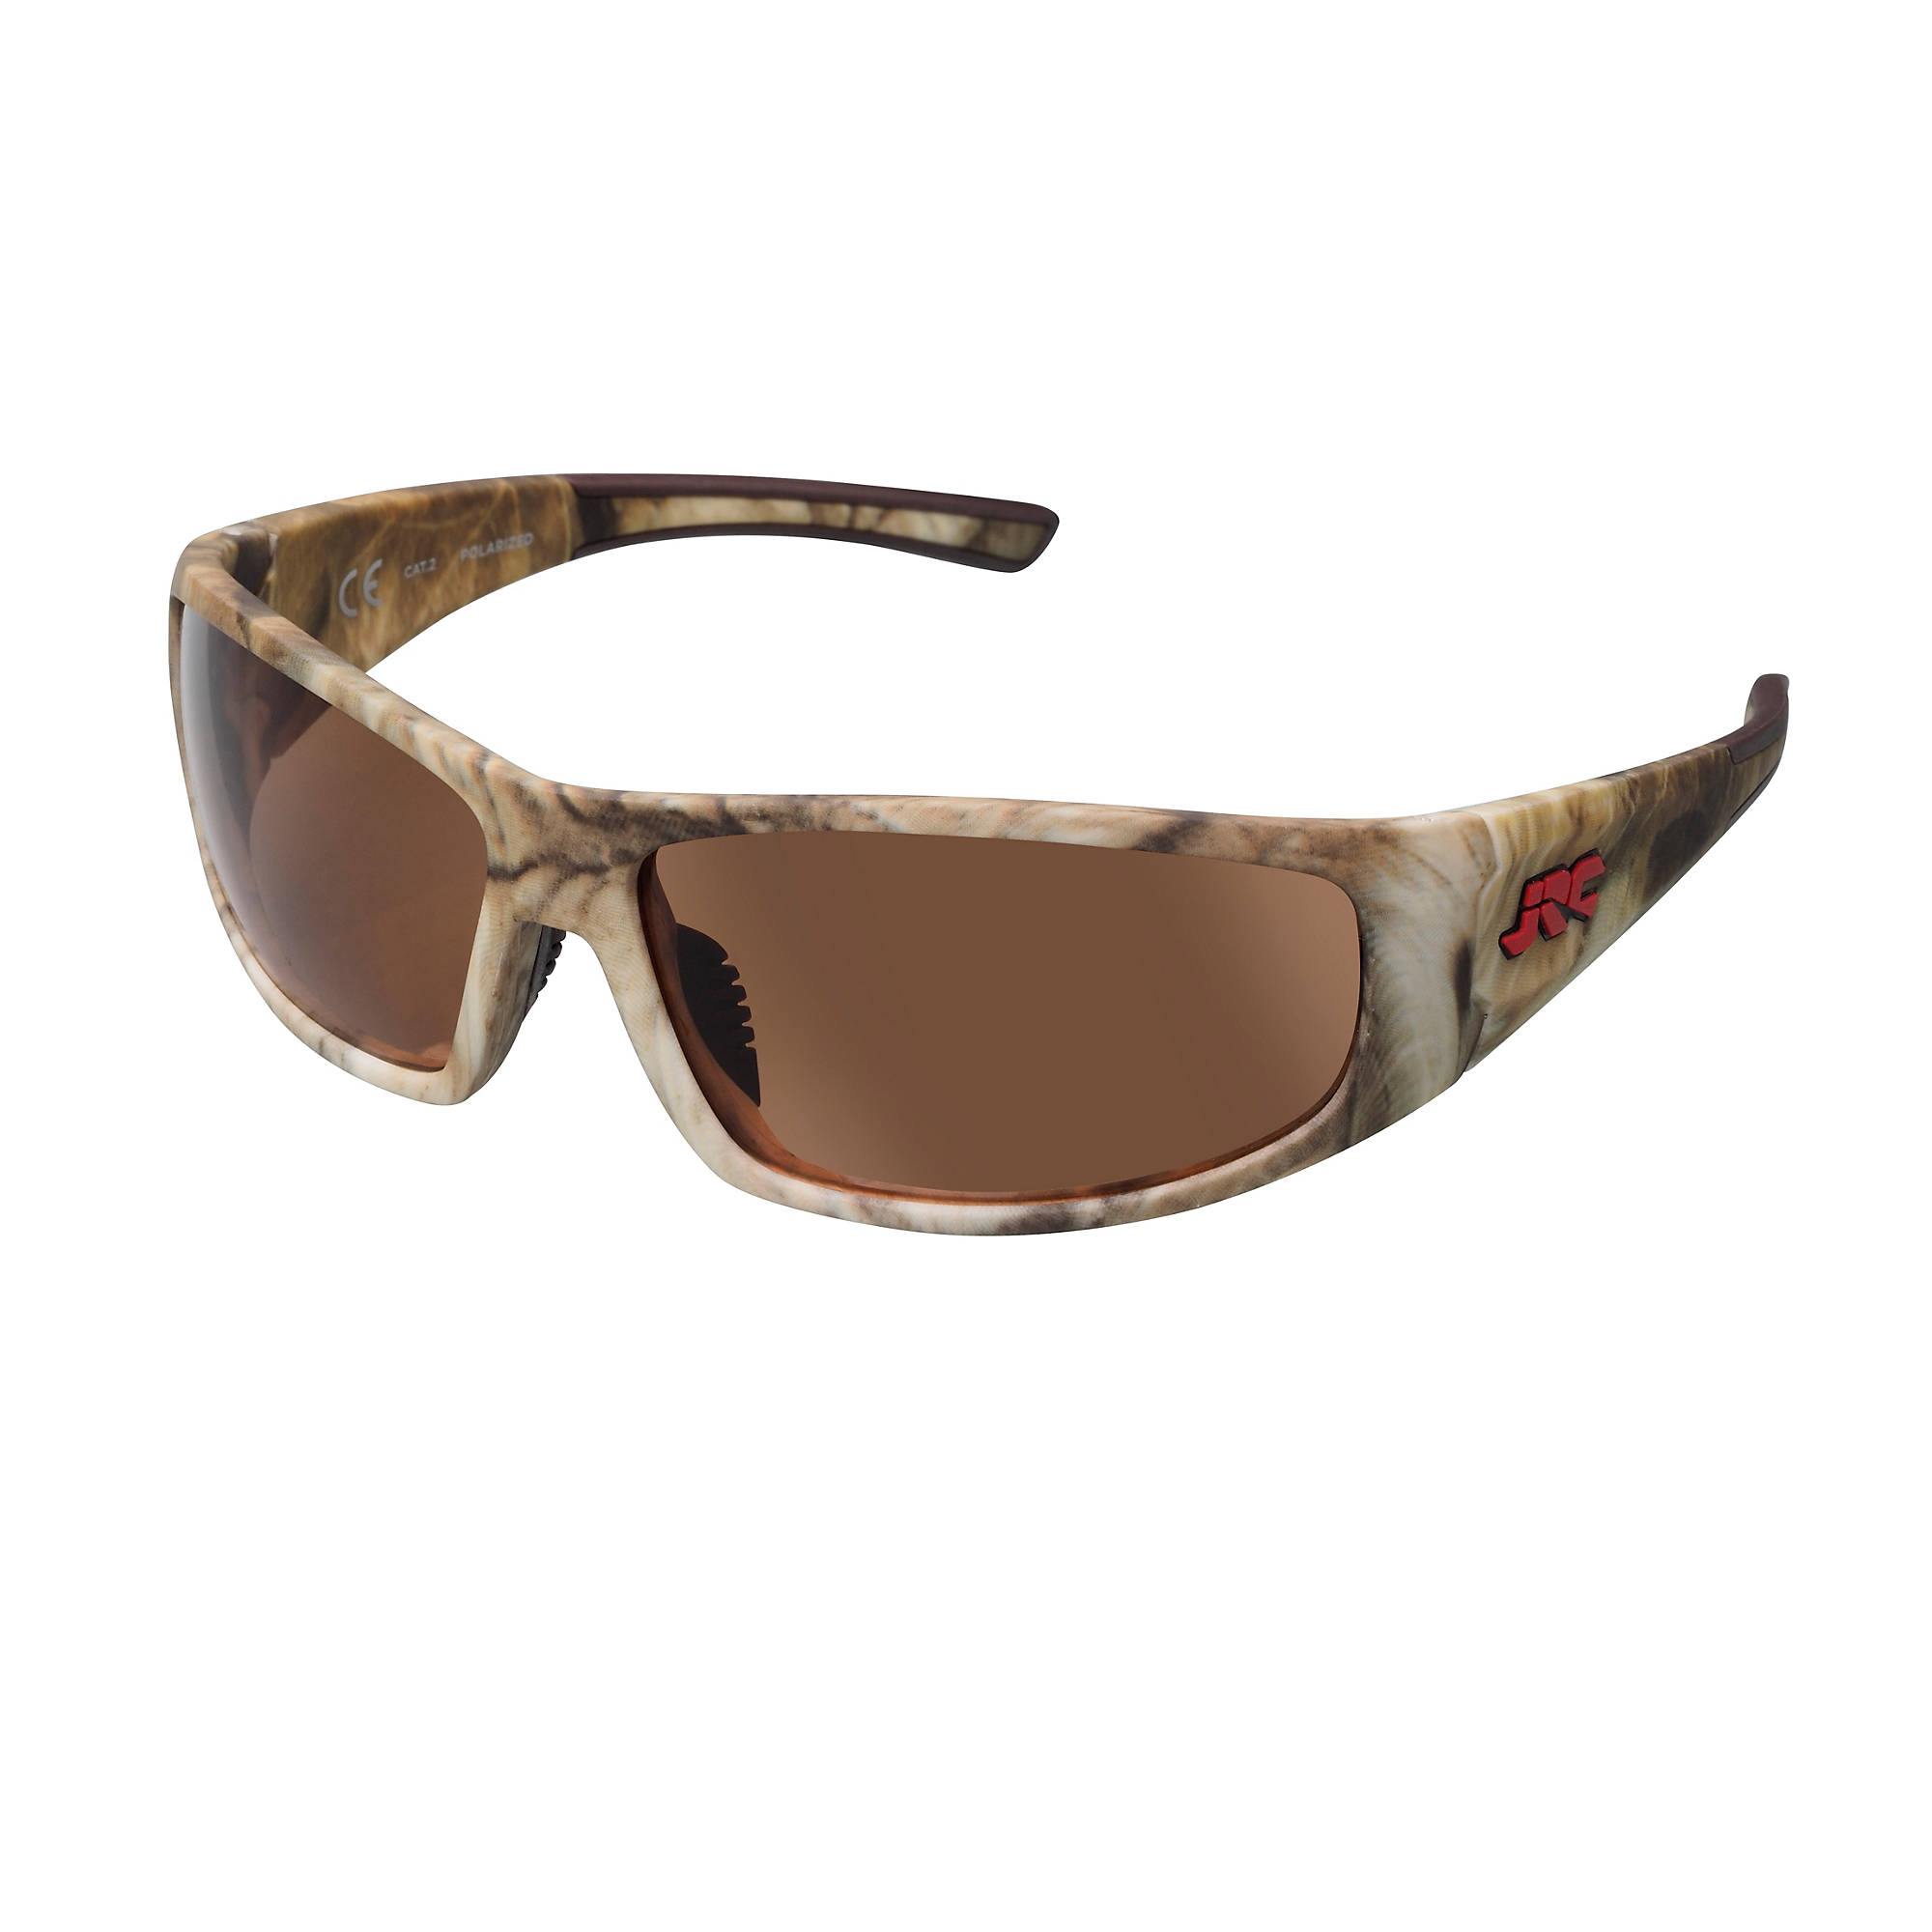 JRC Stealth Sunglasses - Green Camo - Copper